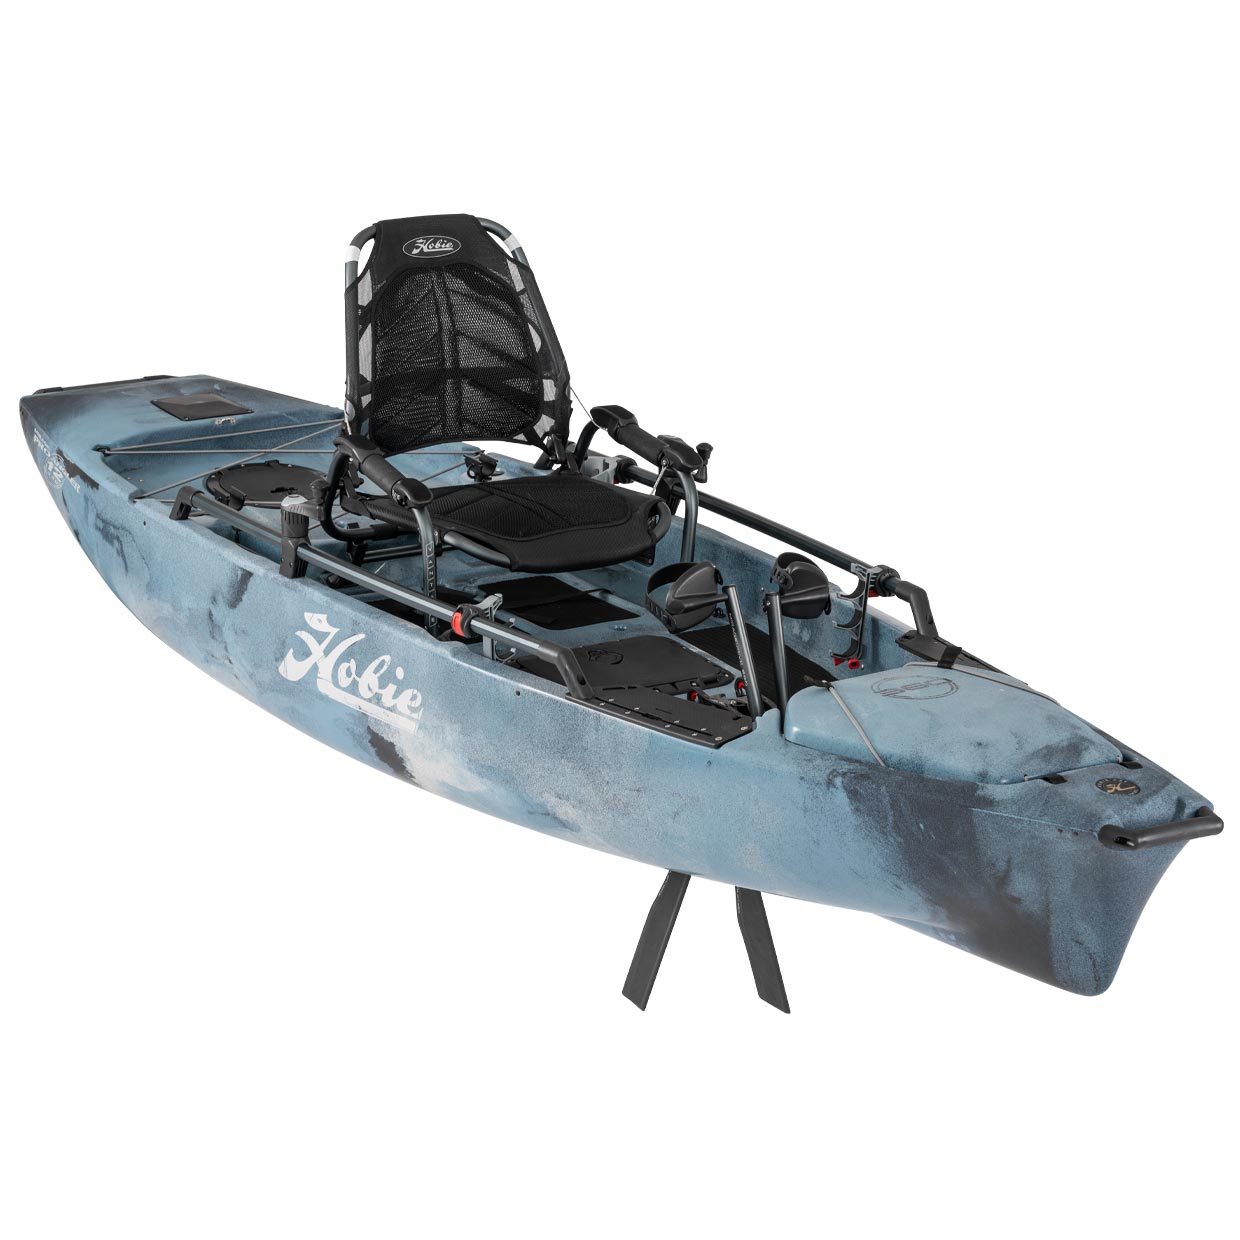 Hobie Cat Mirage Pro Angler 12 360 Camo Kayak – 2021